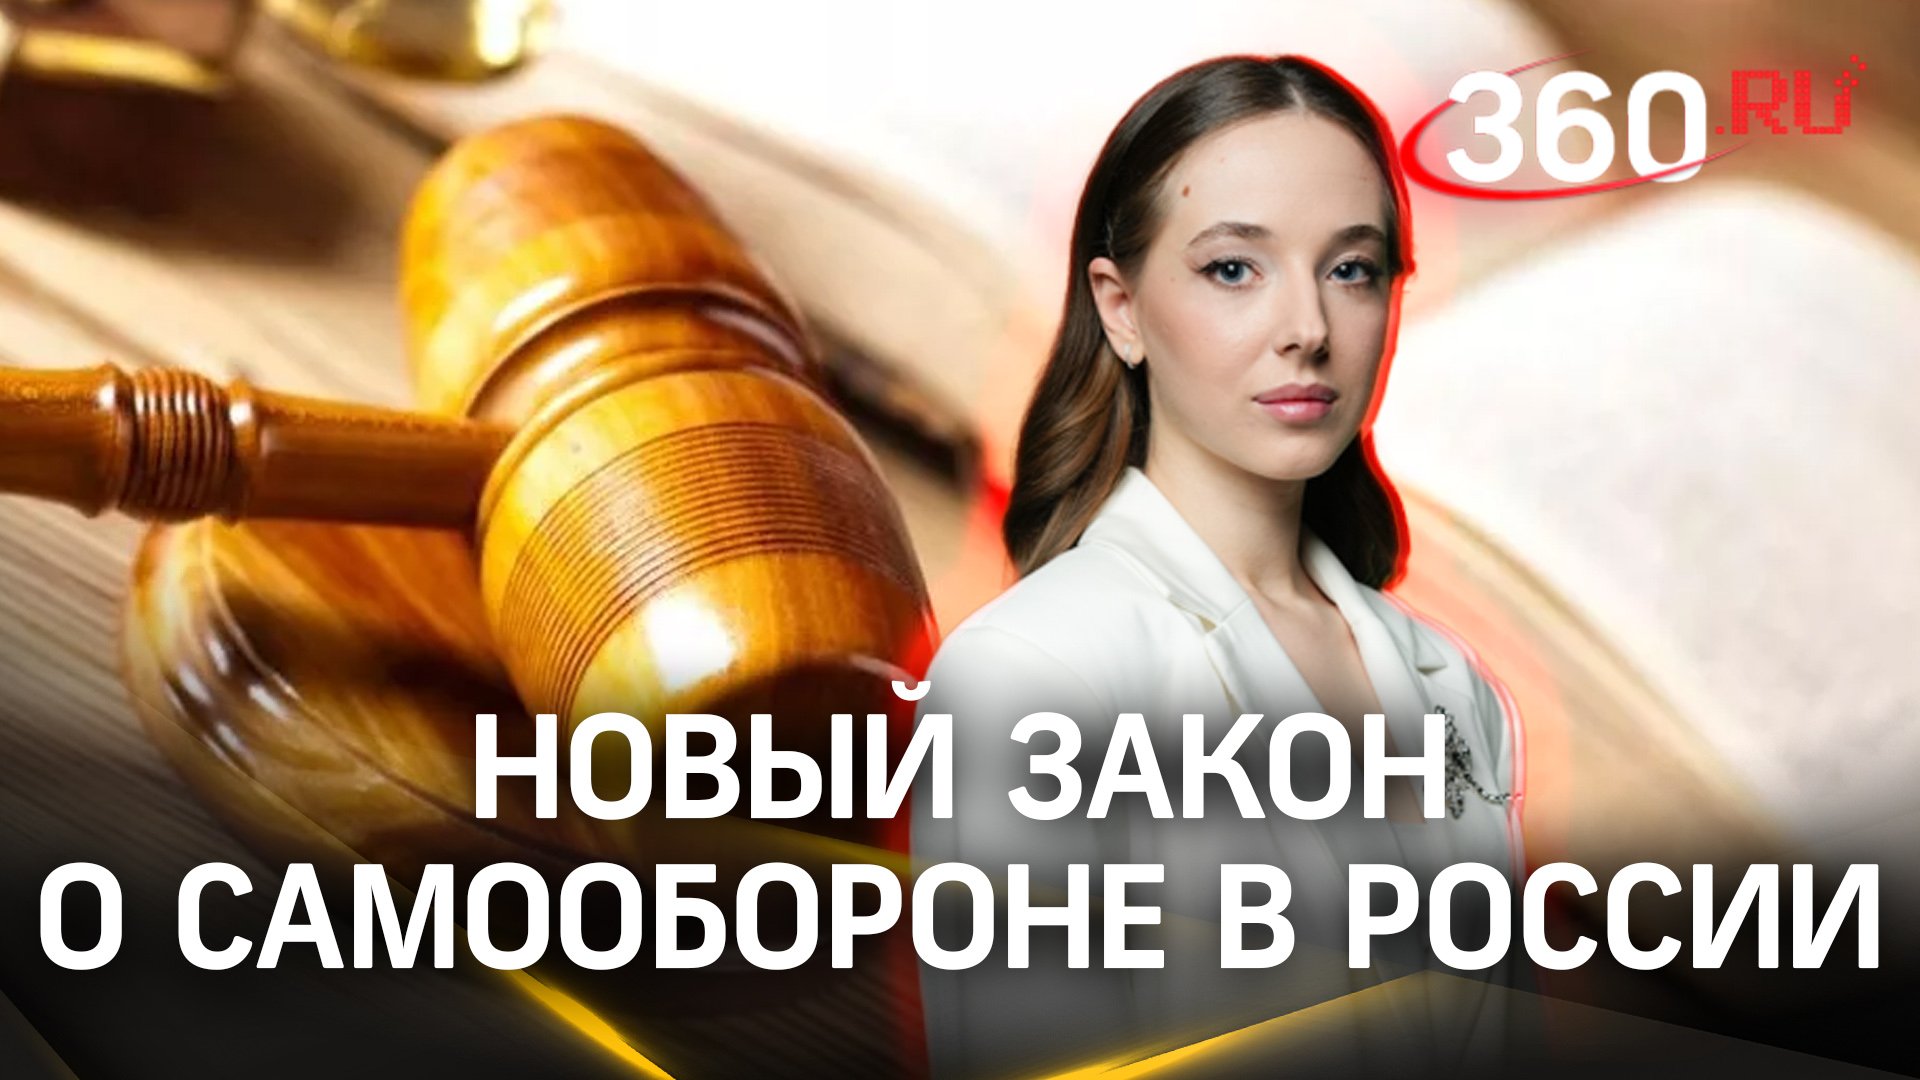 Самооборона в России – новый закон. Нужны ли поправки в Уголовный кодекс? | Анастасия Букреева